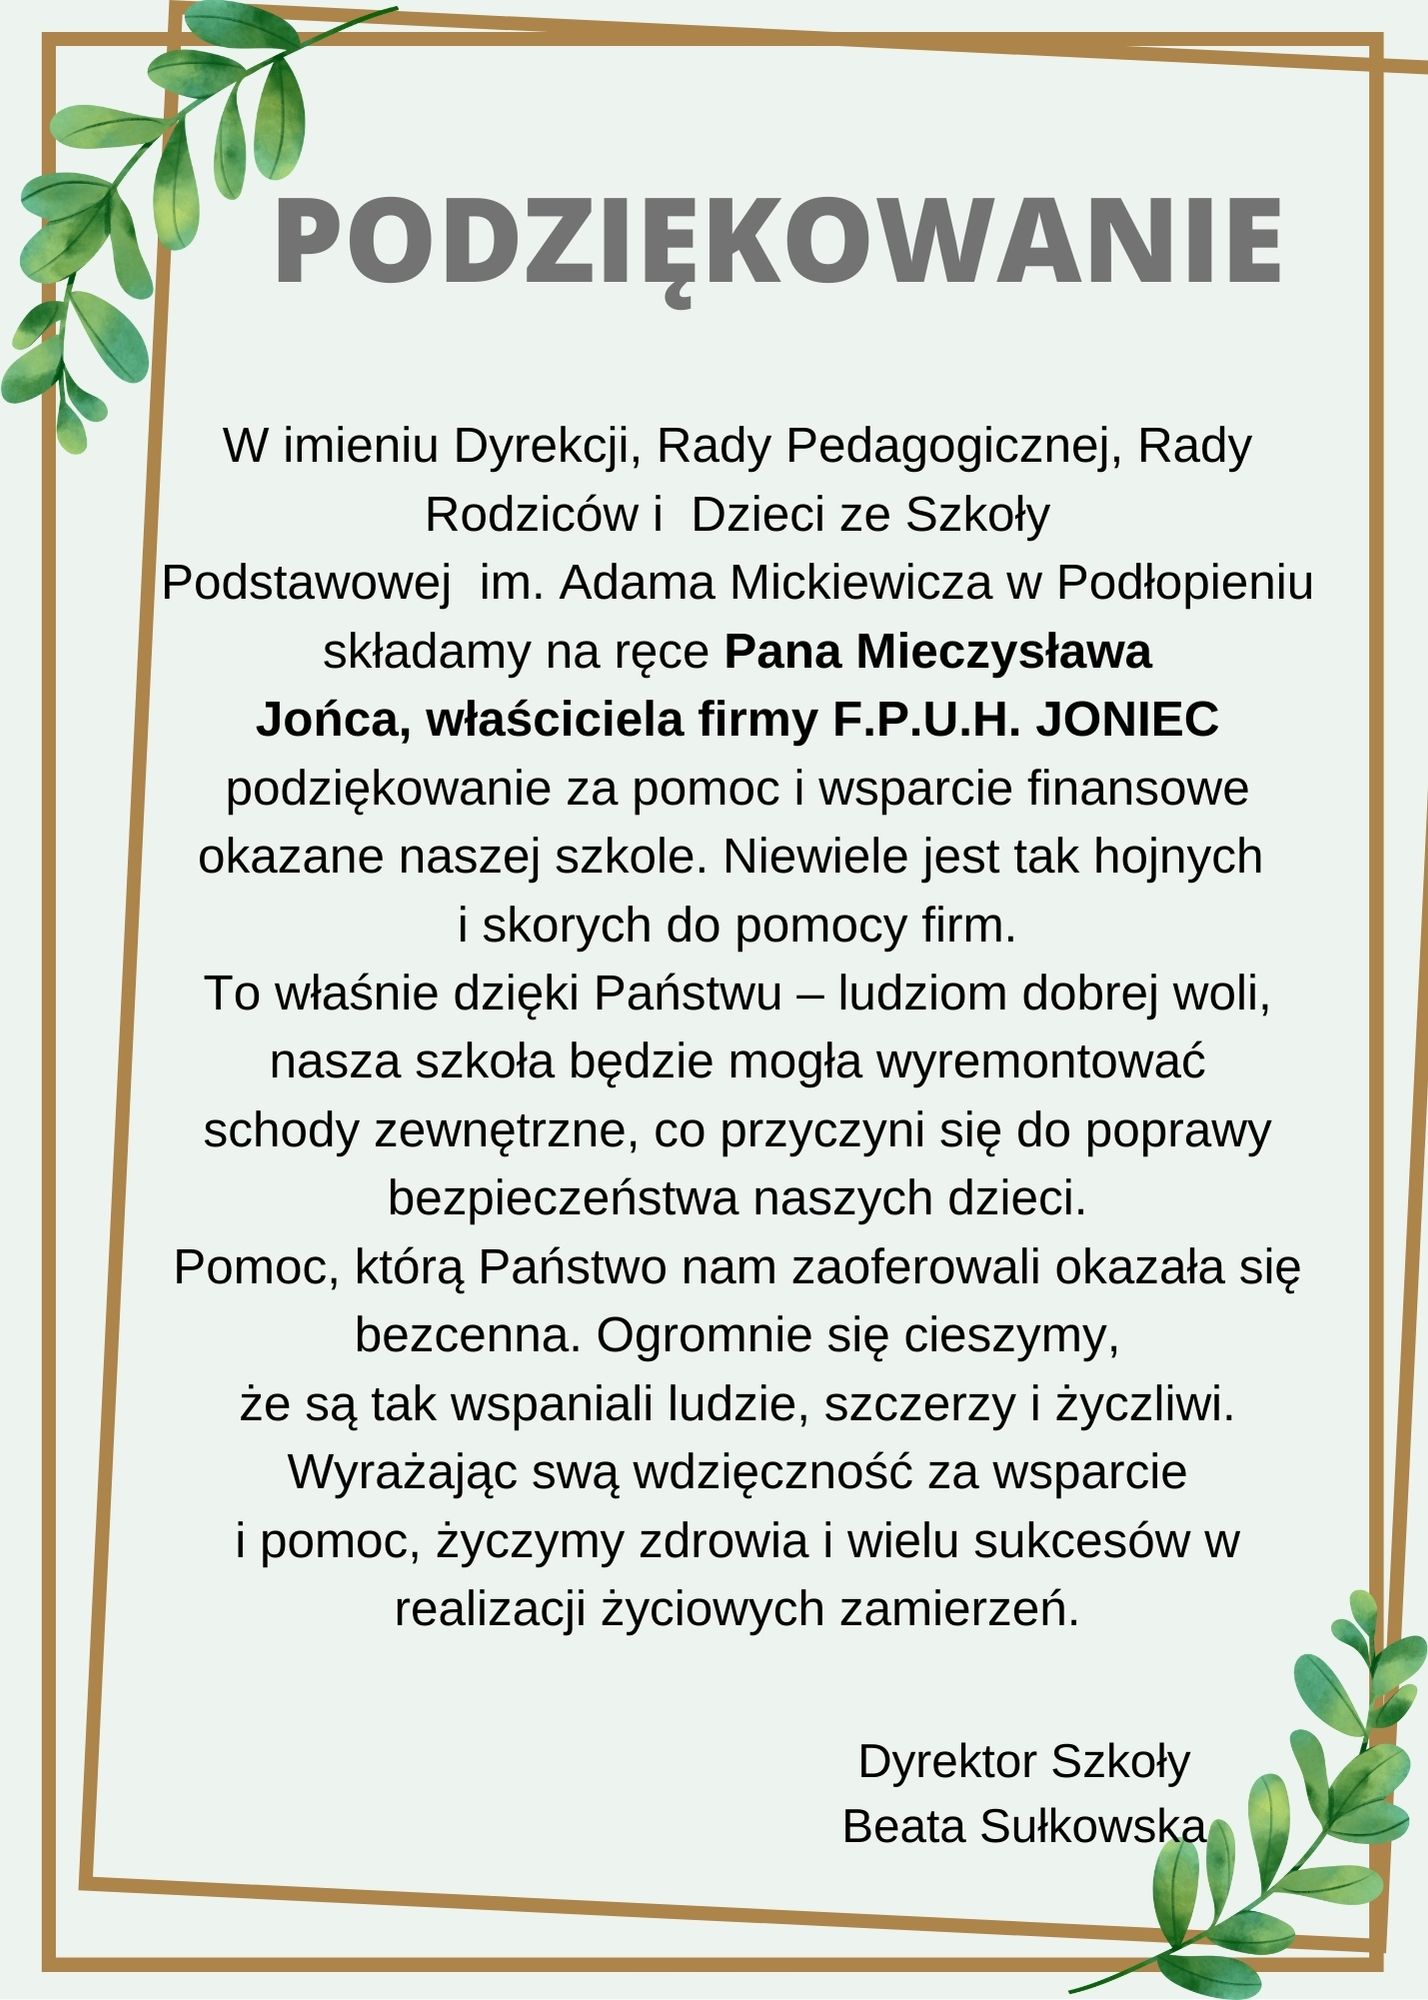 Podziękowania dla Pana Mieczysława Jońca, właściciela firmy F.P.U.H. JONIEC